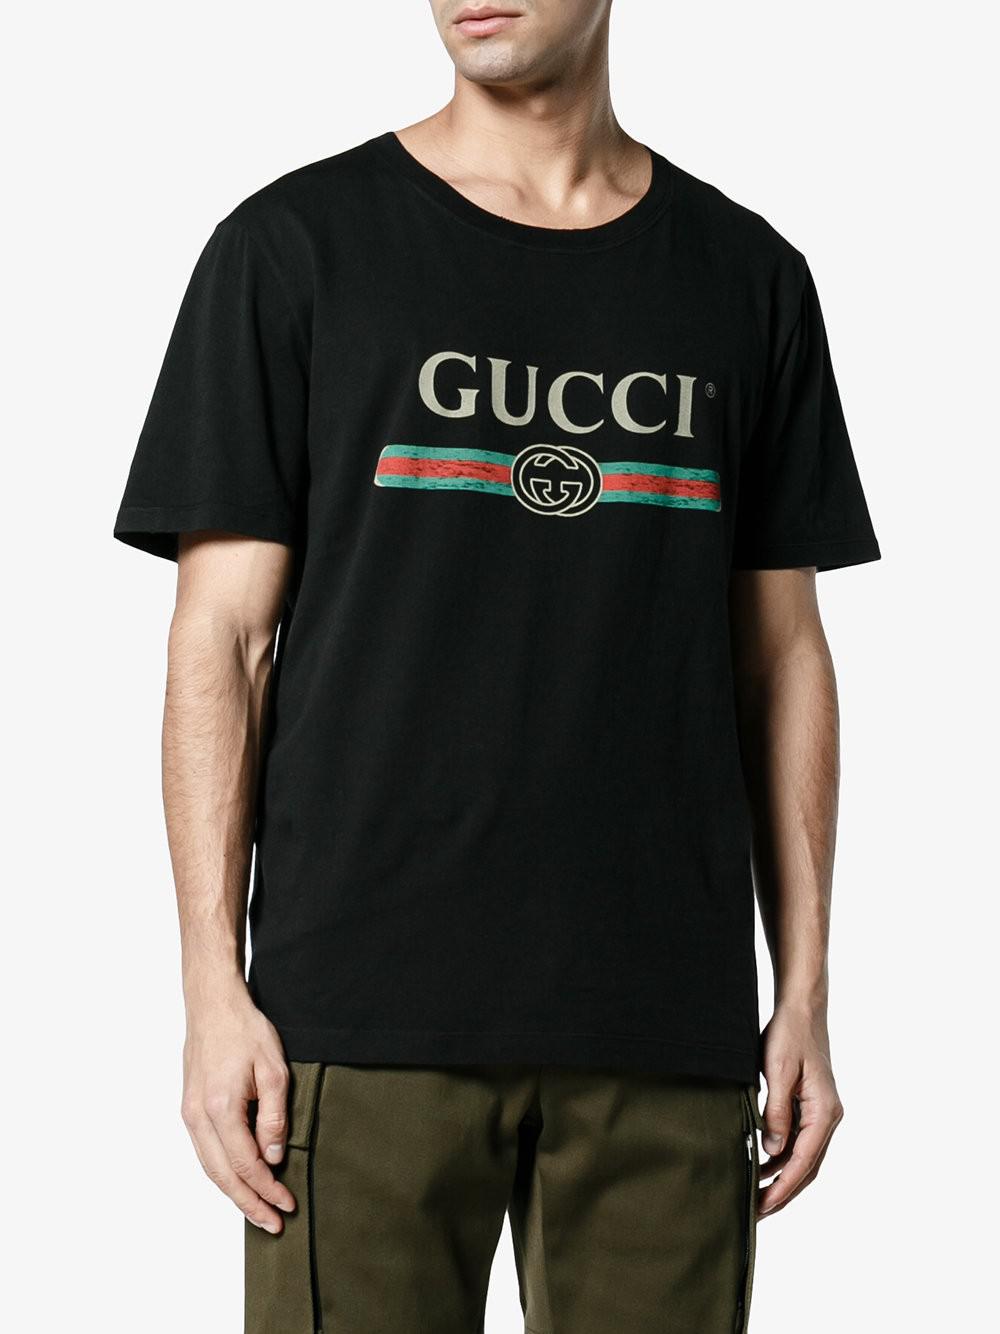 Lyst - Gucci Logo Tshirt in Black for Men